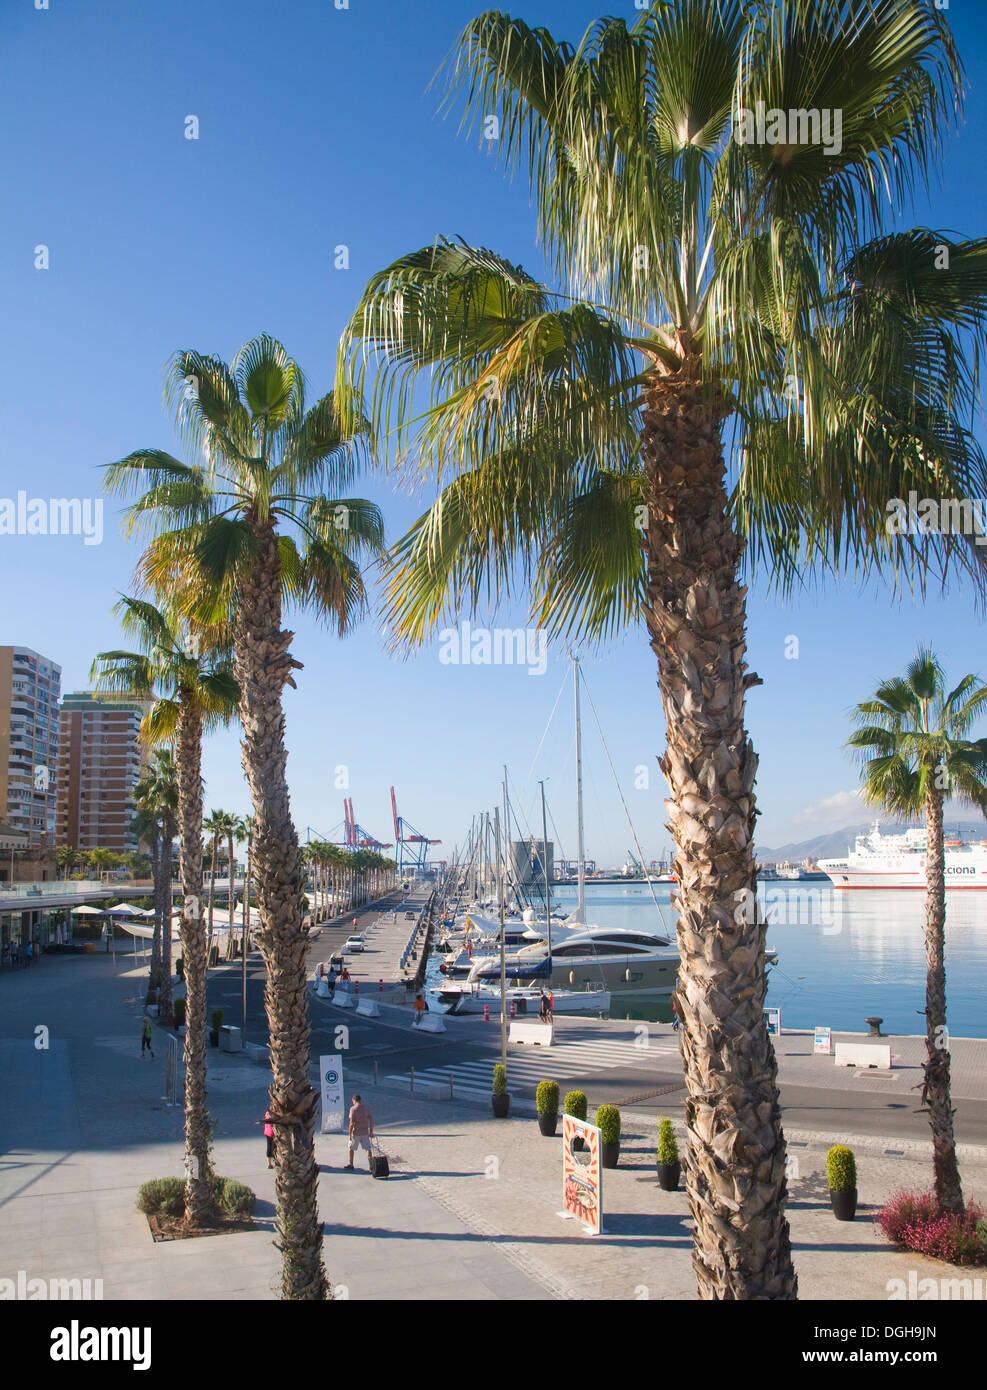 Palmiers dans le développement du nouveau port Muelle Uno à Malaga, Espagne Banque D'Images